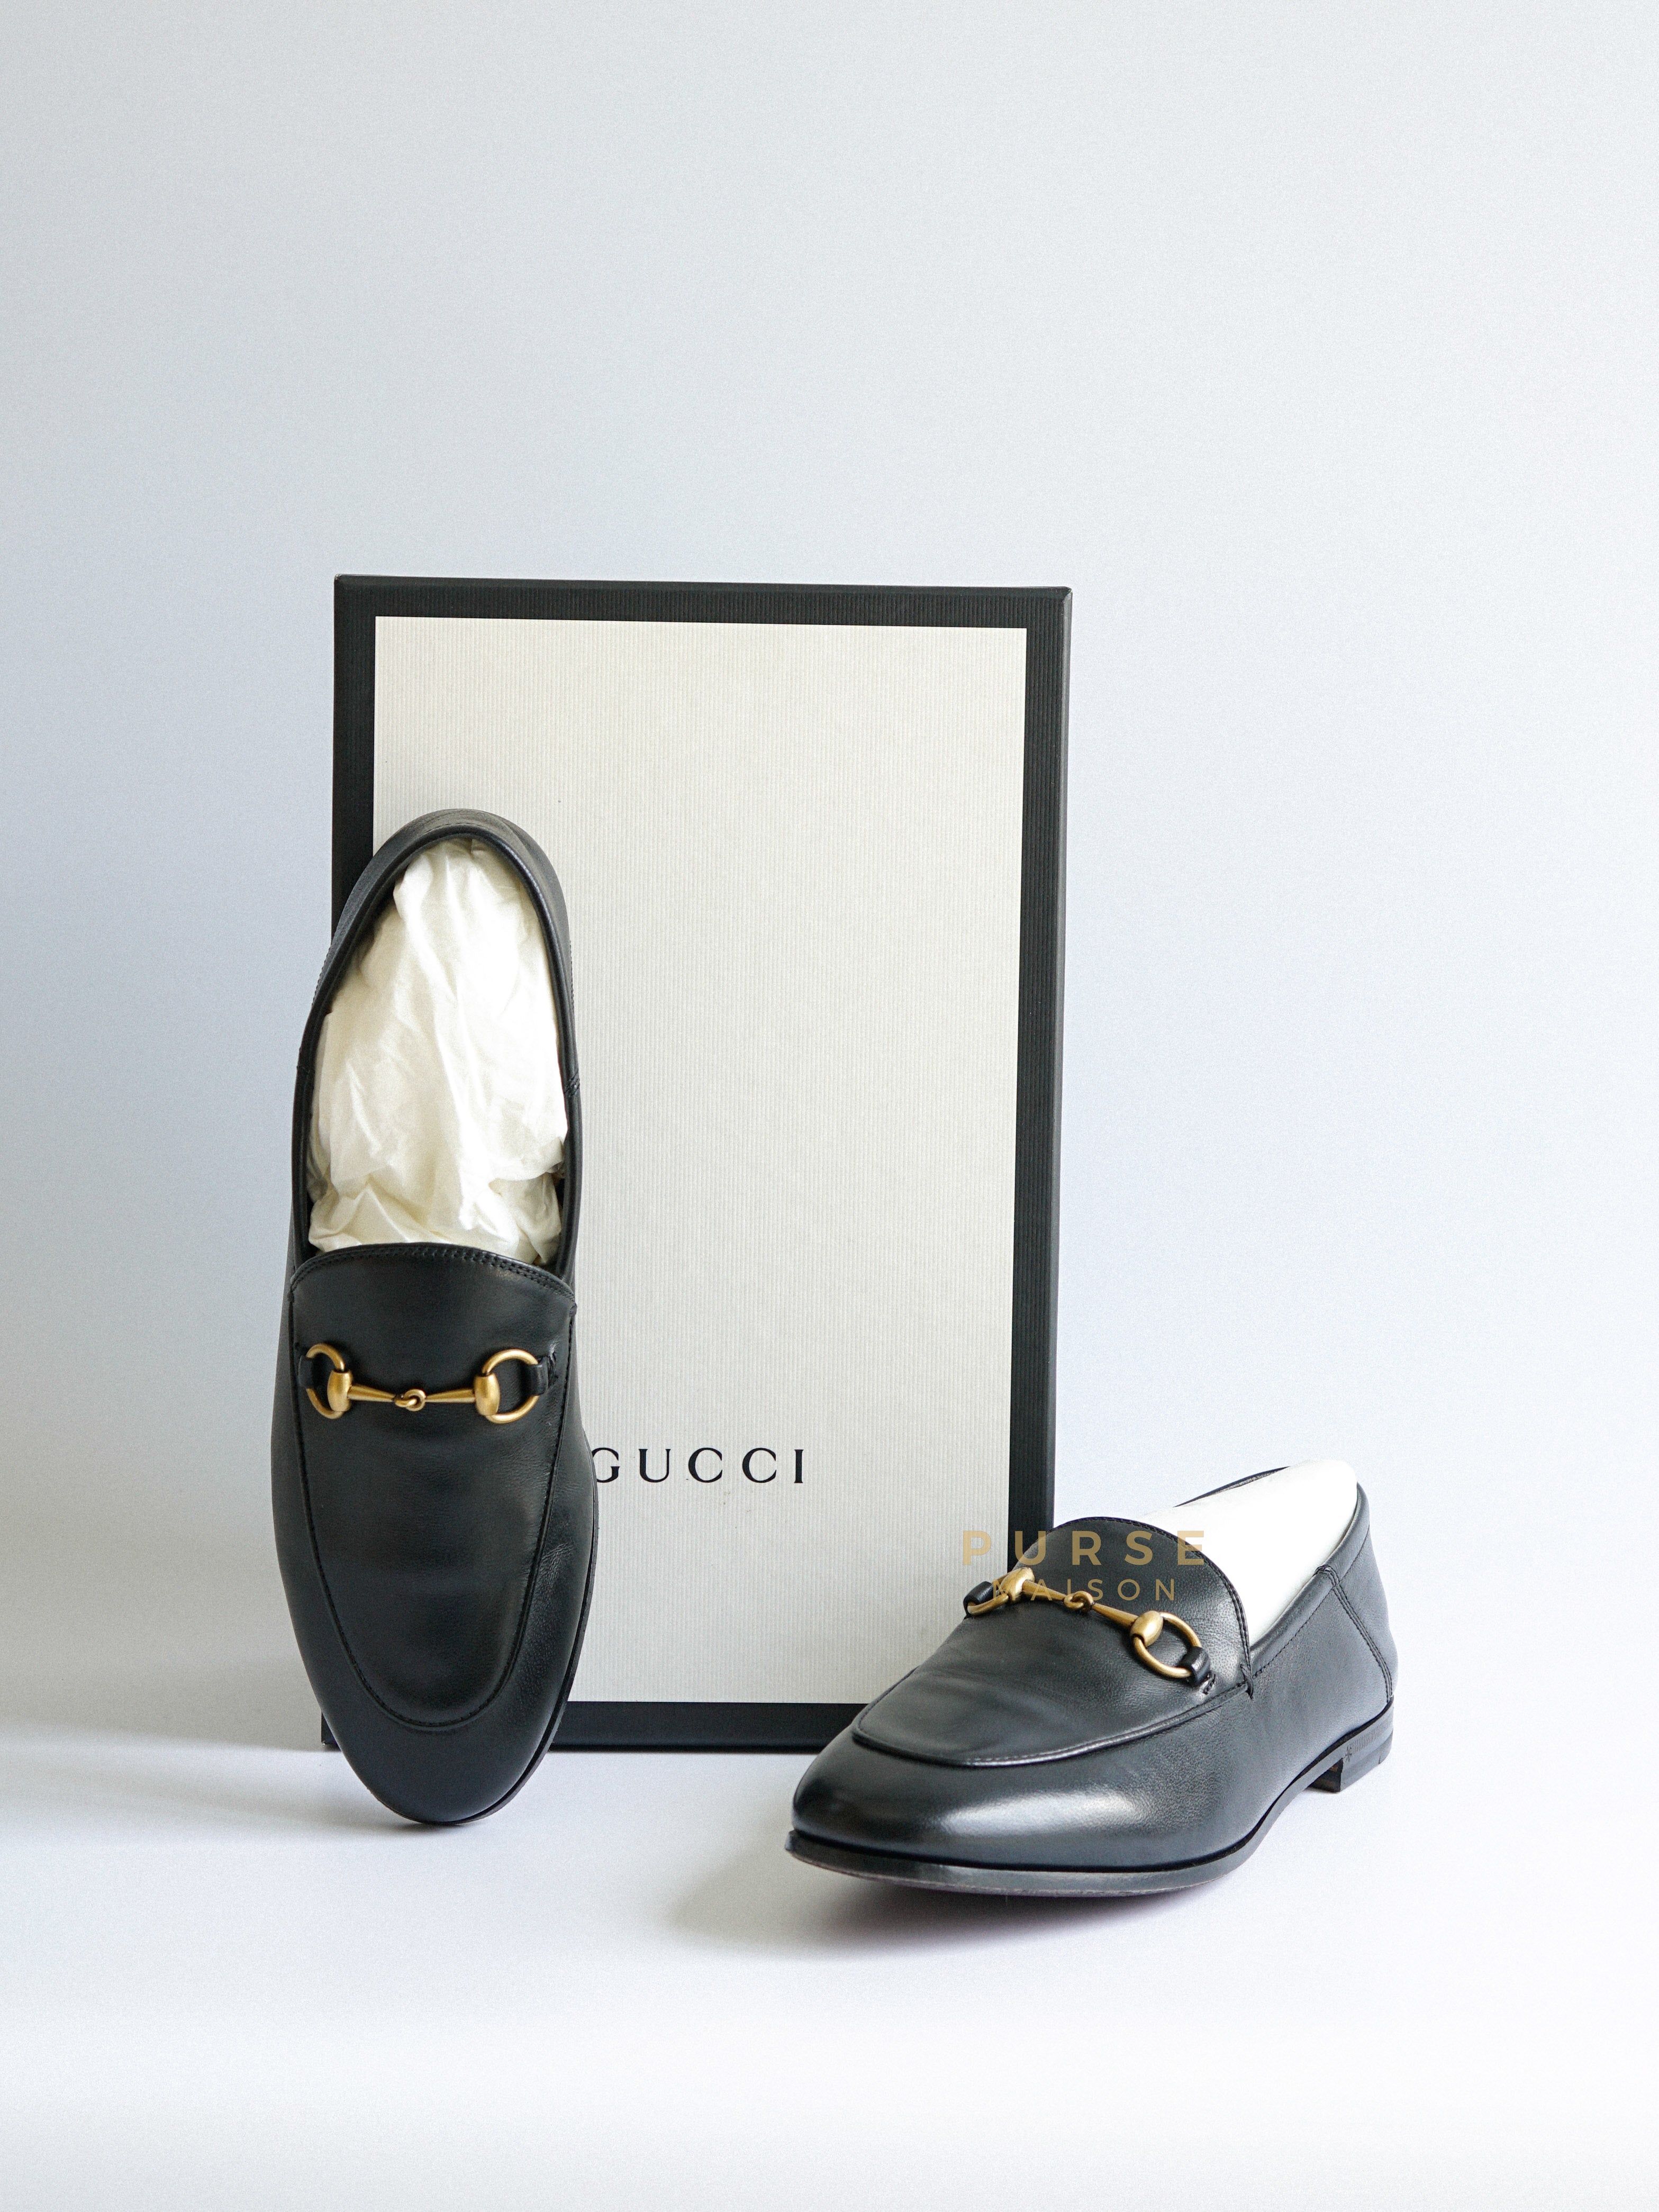 Brixton Horsebit Leather Loafers Size 38.5 | Purse Maison Luxury Bags Shop